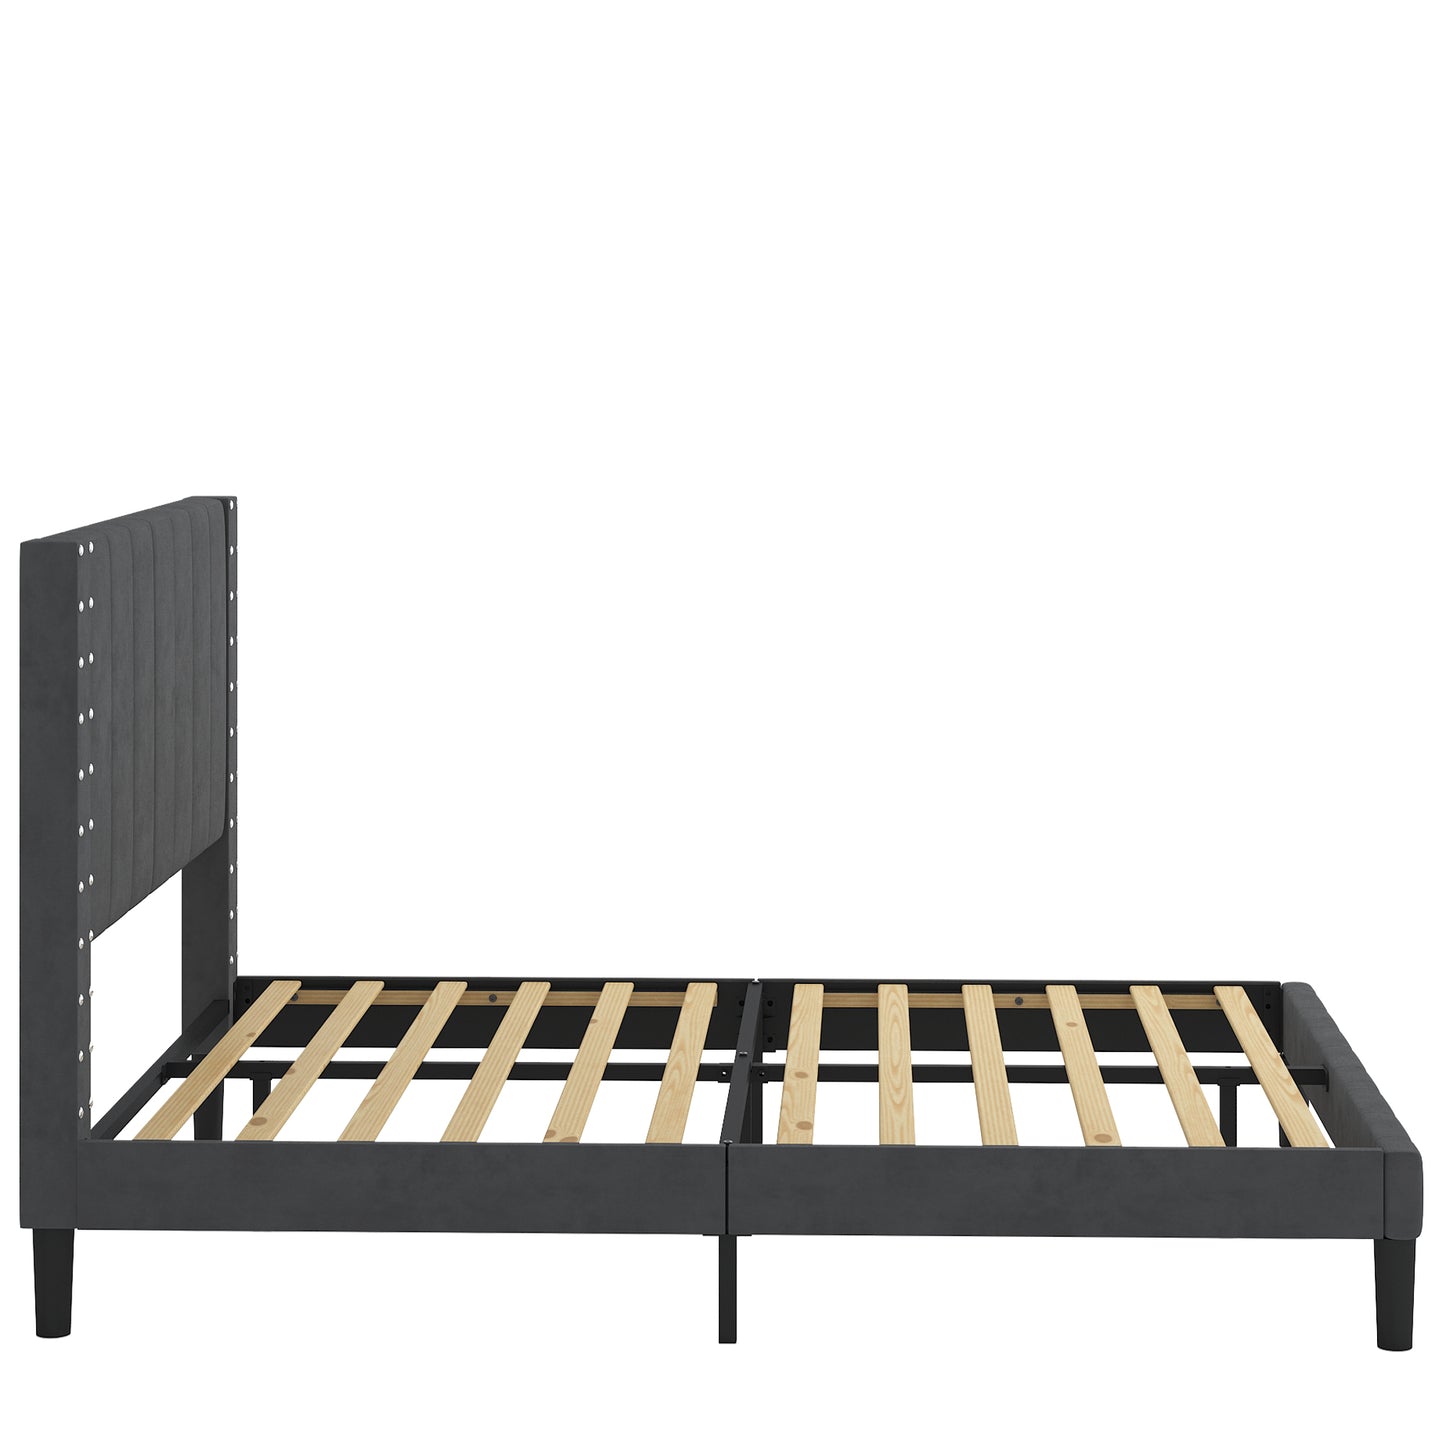 SYNGAR Full Bed Frame, New Upgrade Full Size Fabric Upholstered Platform Bed Frame with Elegant Headboard, Bedroom Furniture Wooden Frame Platform Bed Frame, No Box Spring Needed, Dark Gray